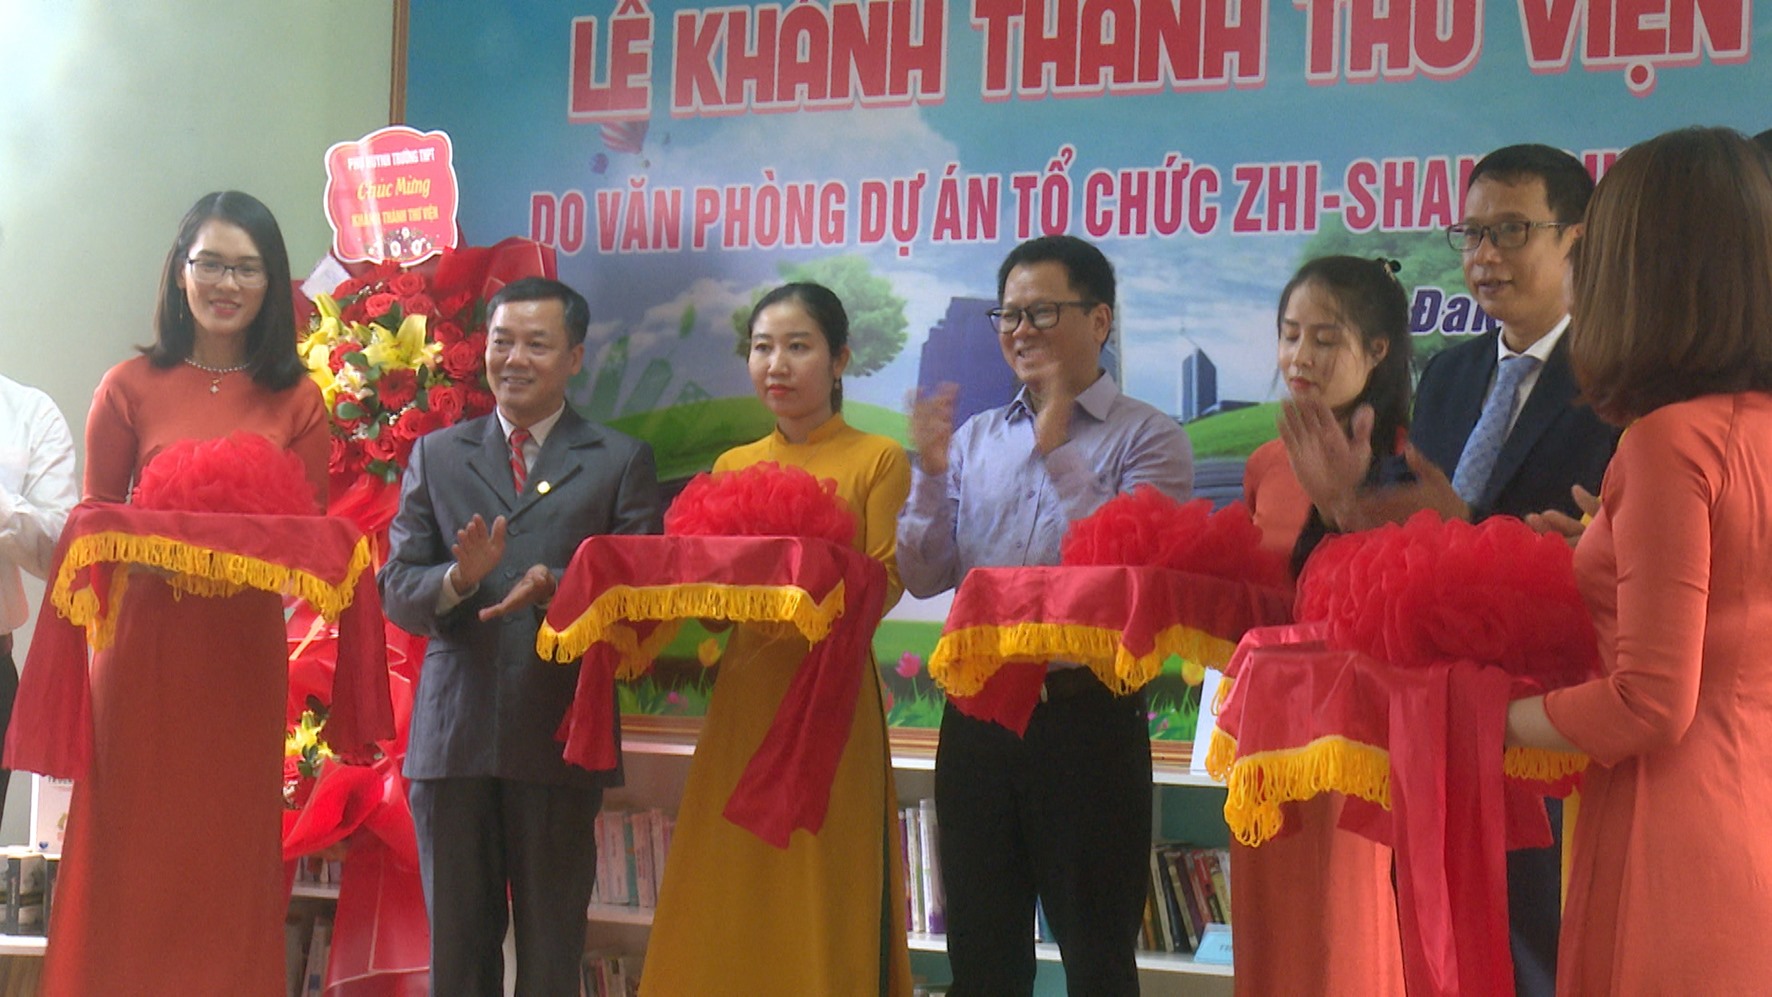 Cắt băng khánh thành Thư viện thân thiện tại Trường THPT Đakrông-Ảnh: Văn Tiến